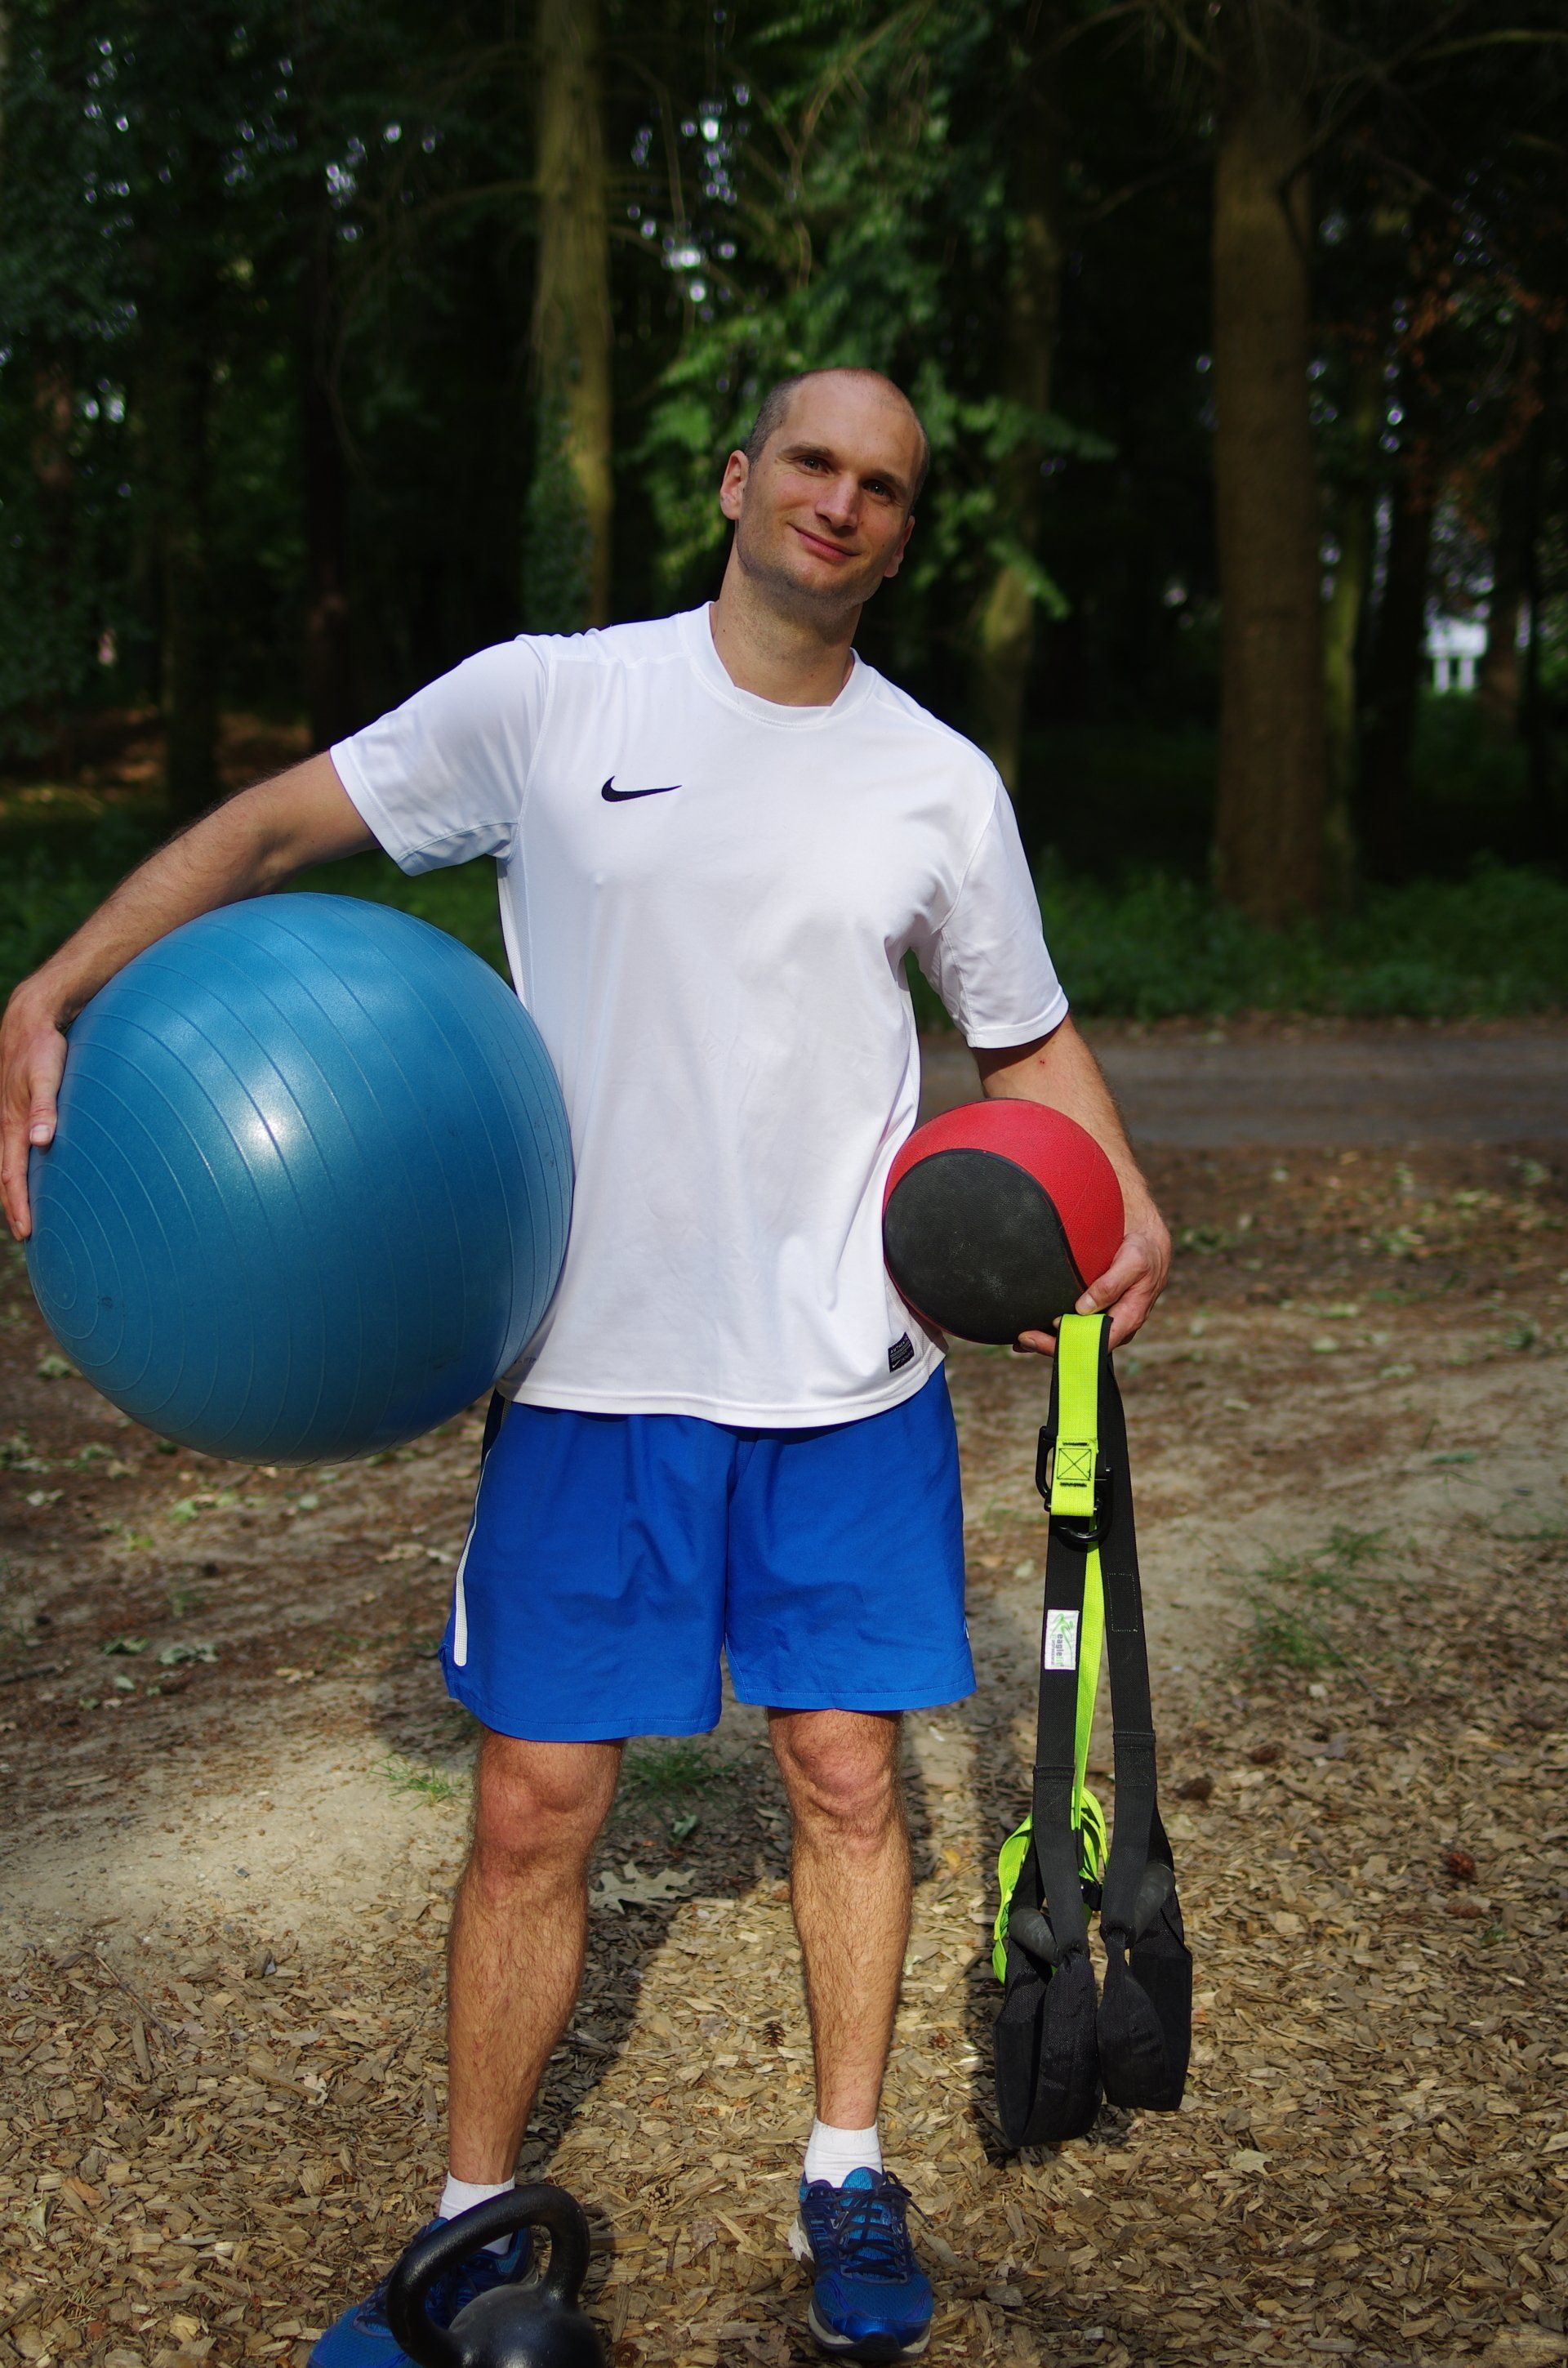 Personal Training Berlin, Potsdam, Oberhavel mit Trainer Benjamin Müske, der gerade eine Stabilisationsübung auf einem Medizinball, Pezziball und einem Kettlebell durchführt und dabei fröhlich in die Kamera lacht